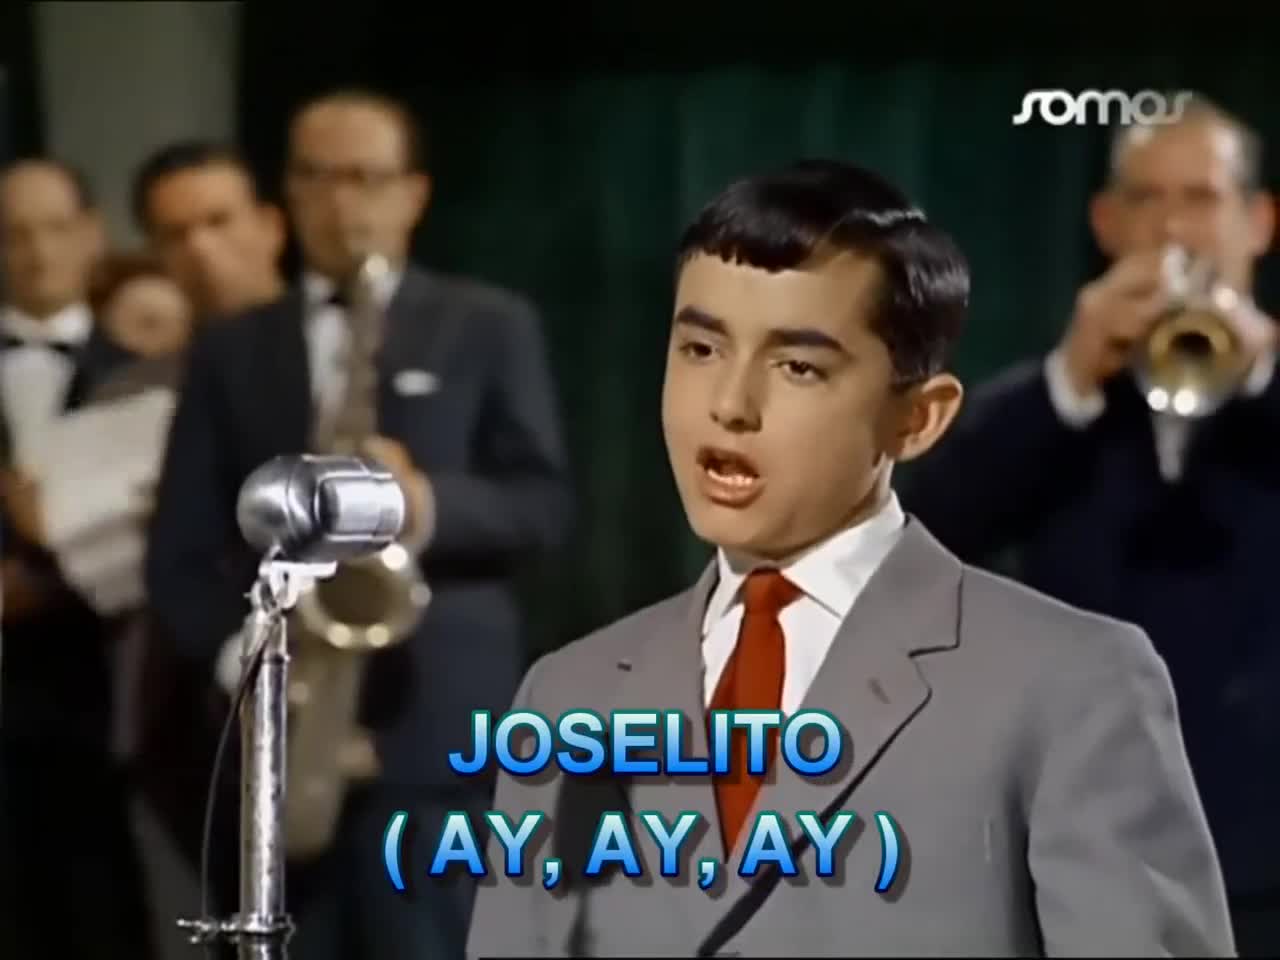 Extrait vidéo du film  Le Secret de Joselito